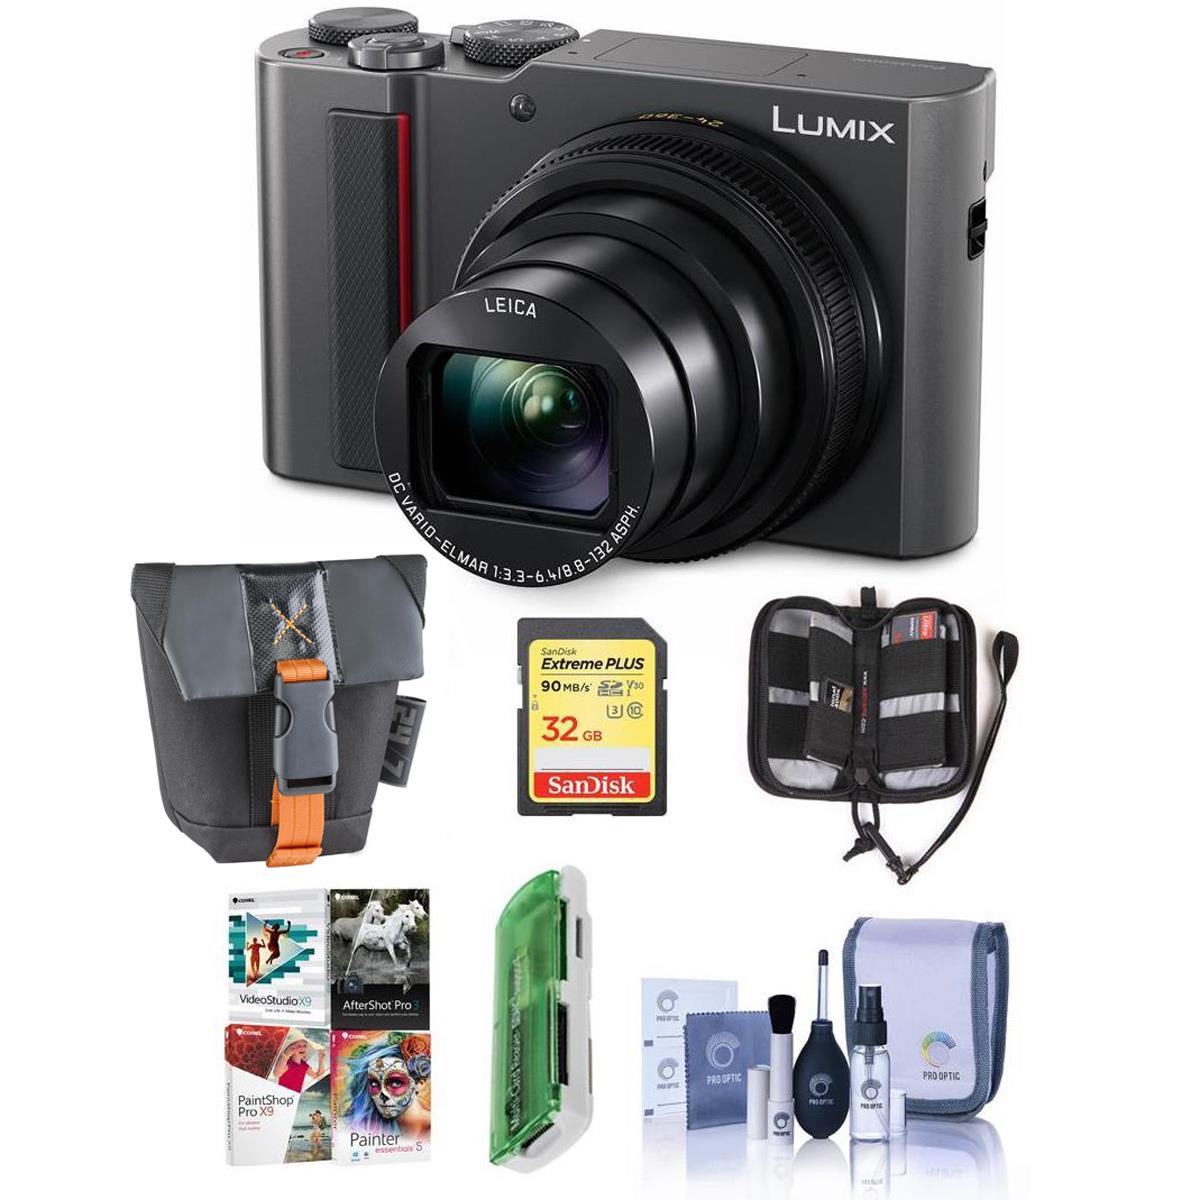 Panasonic Lumix DMC-ZS200 Digital Camera Silver With Free PC Accessory Bundle